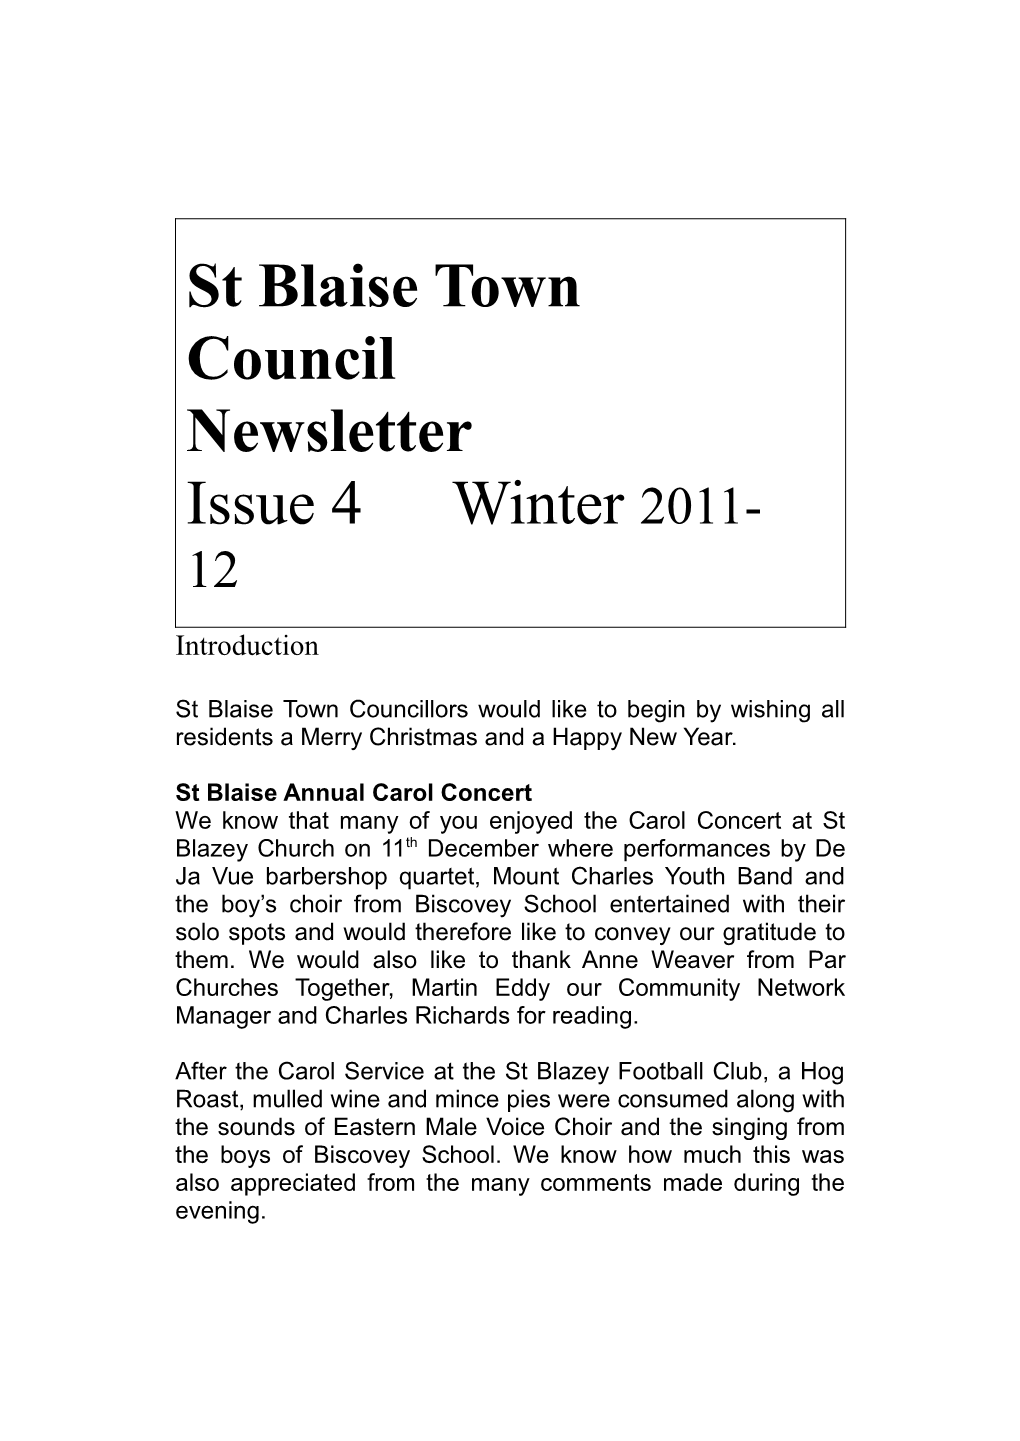 St Blaise Town Council